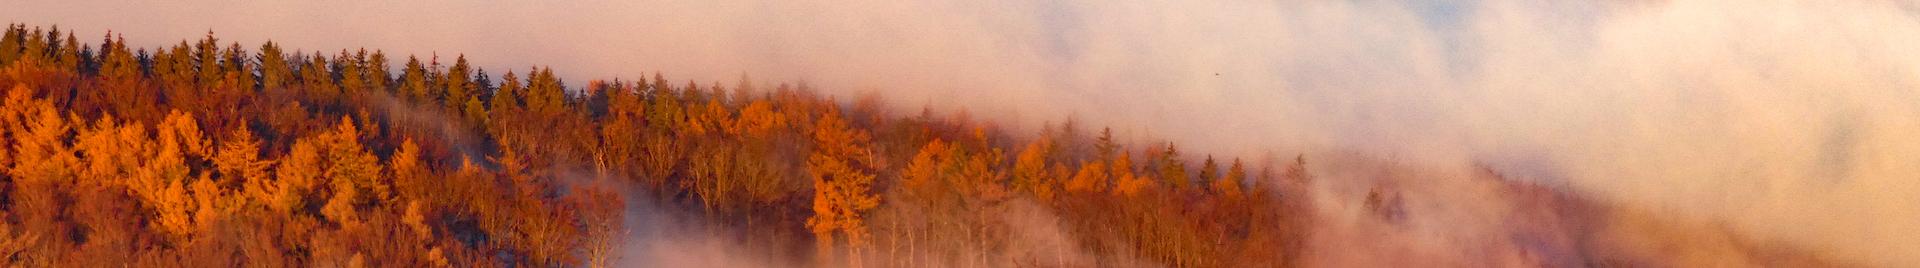 foggy autumn forest